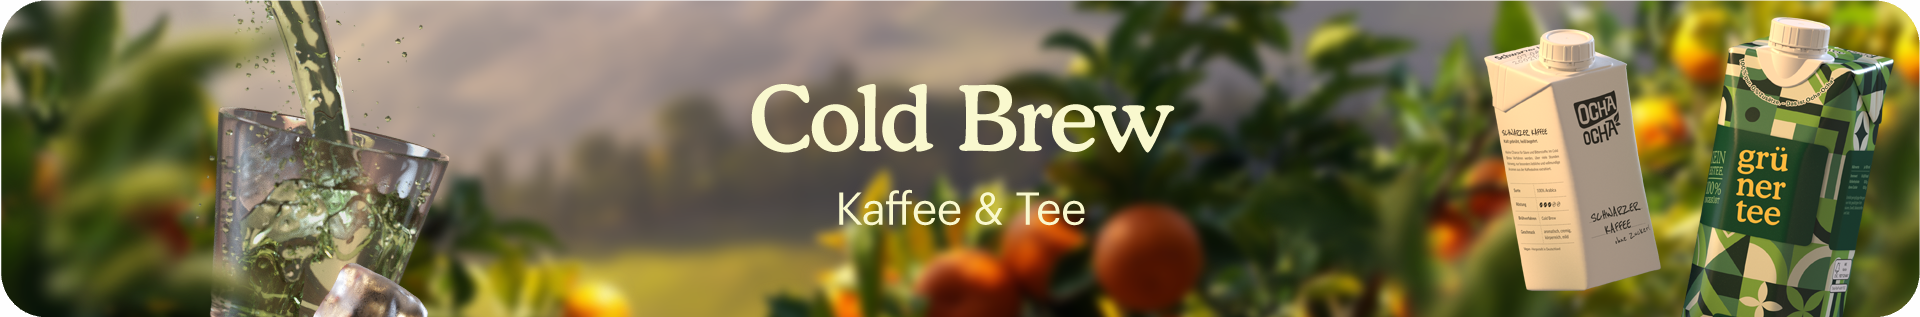 Banner von Ocha-Ocha zu Cold Brew Getränken